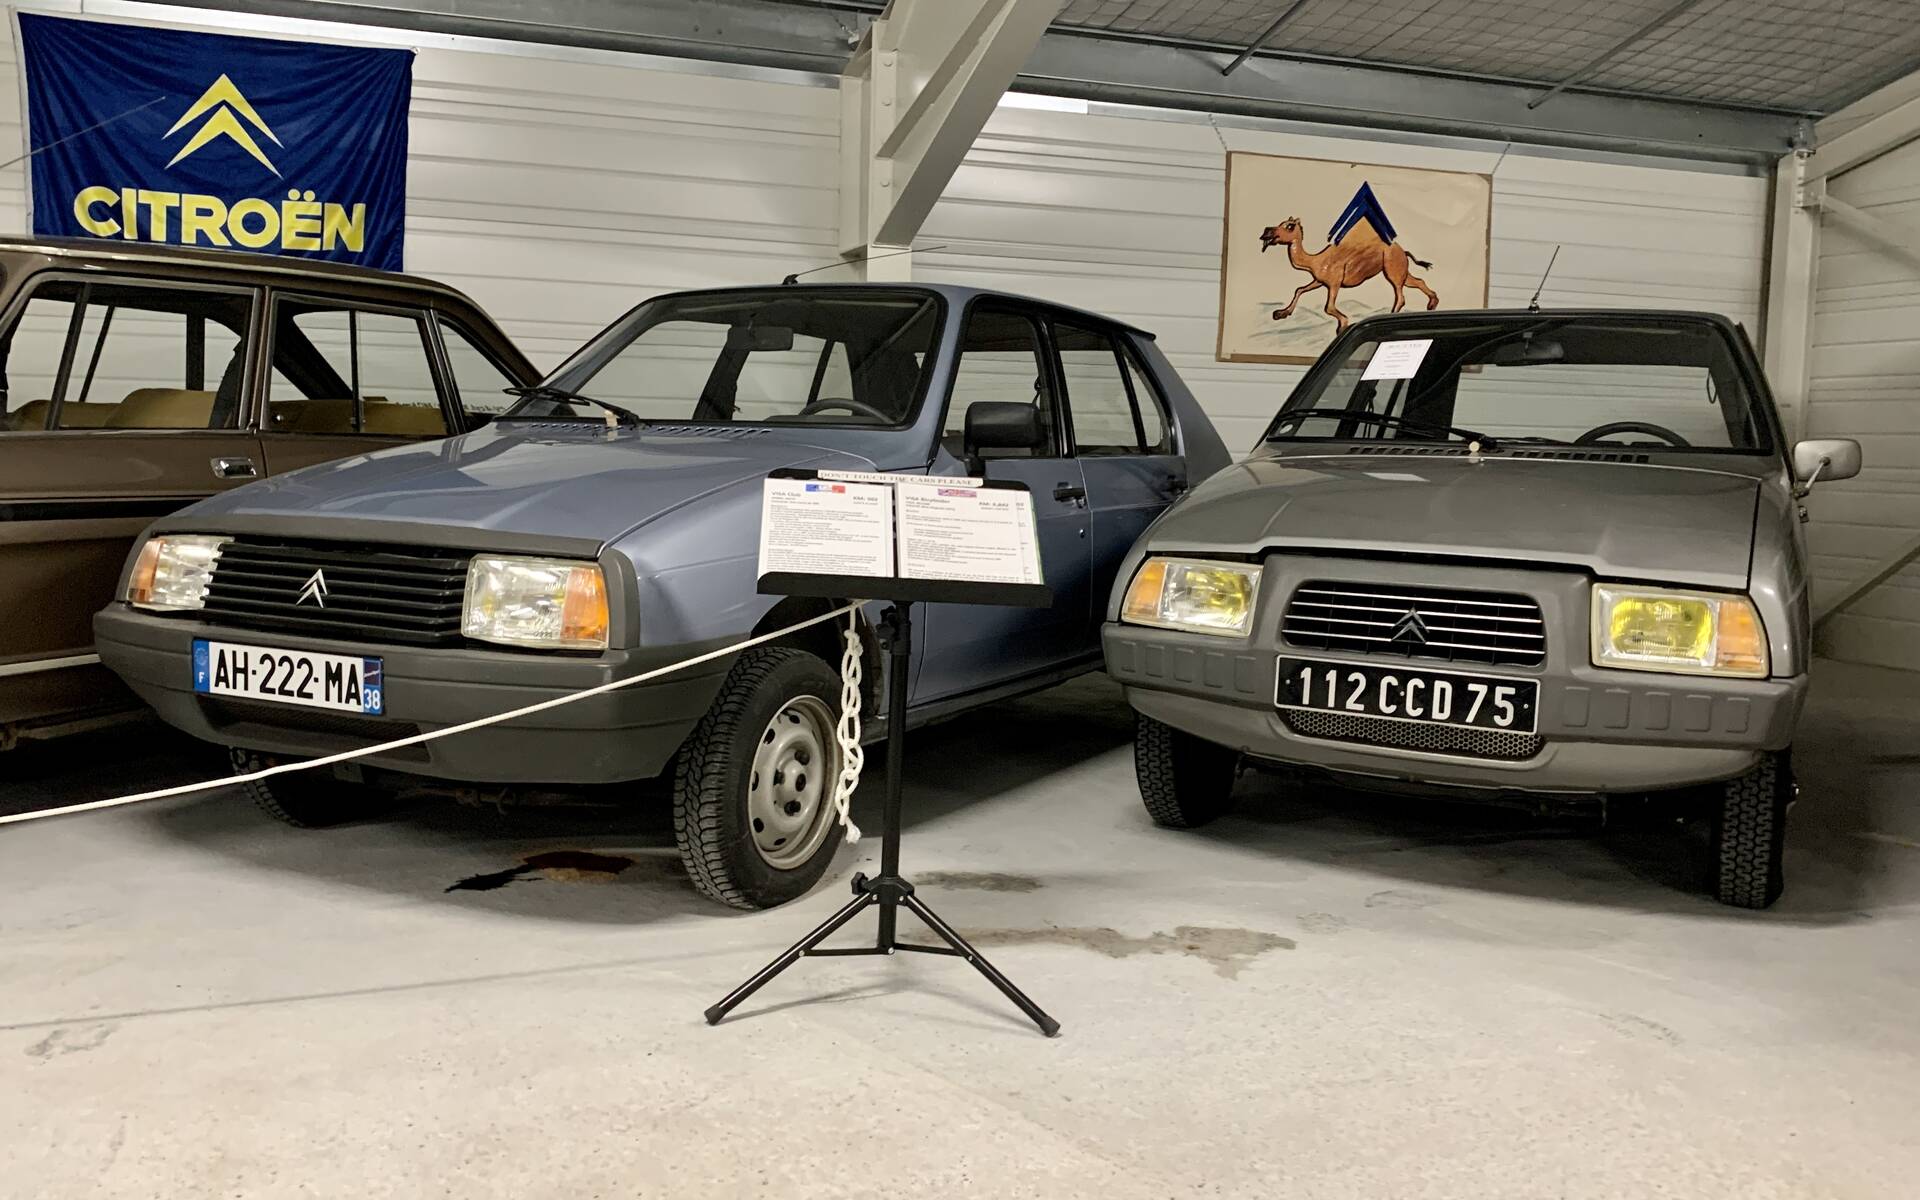 32 - Photos: plus de 100 Citroën d'exception réunies dans un musée en France 543139-photos-plus-de-100-citroen-d-exception-reunies-dans-un-musee-en-france